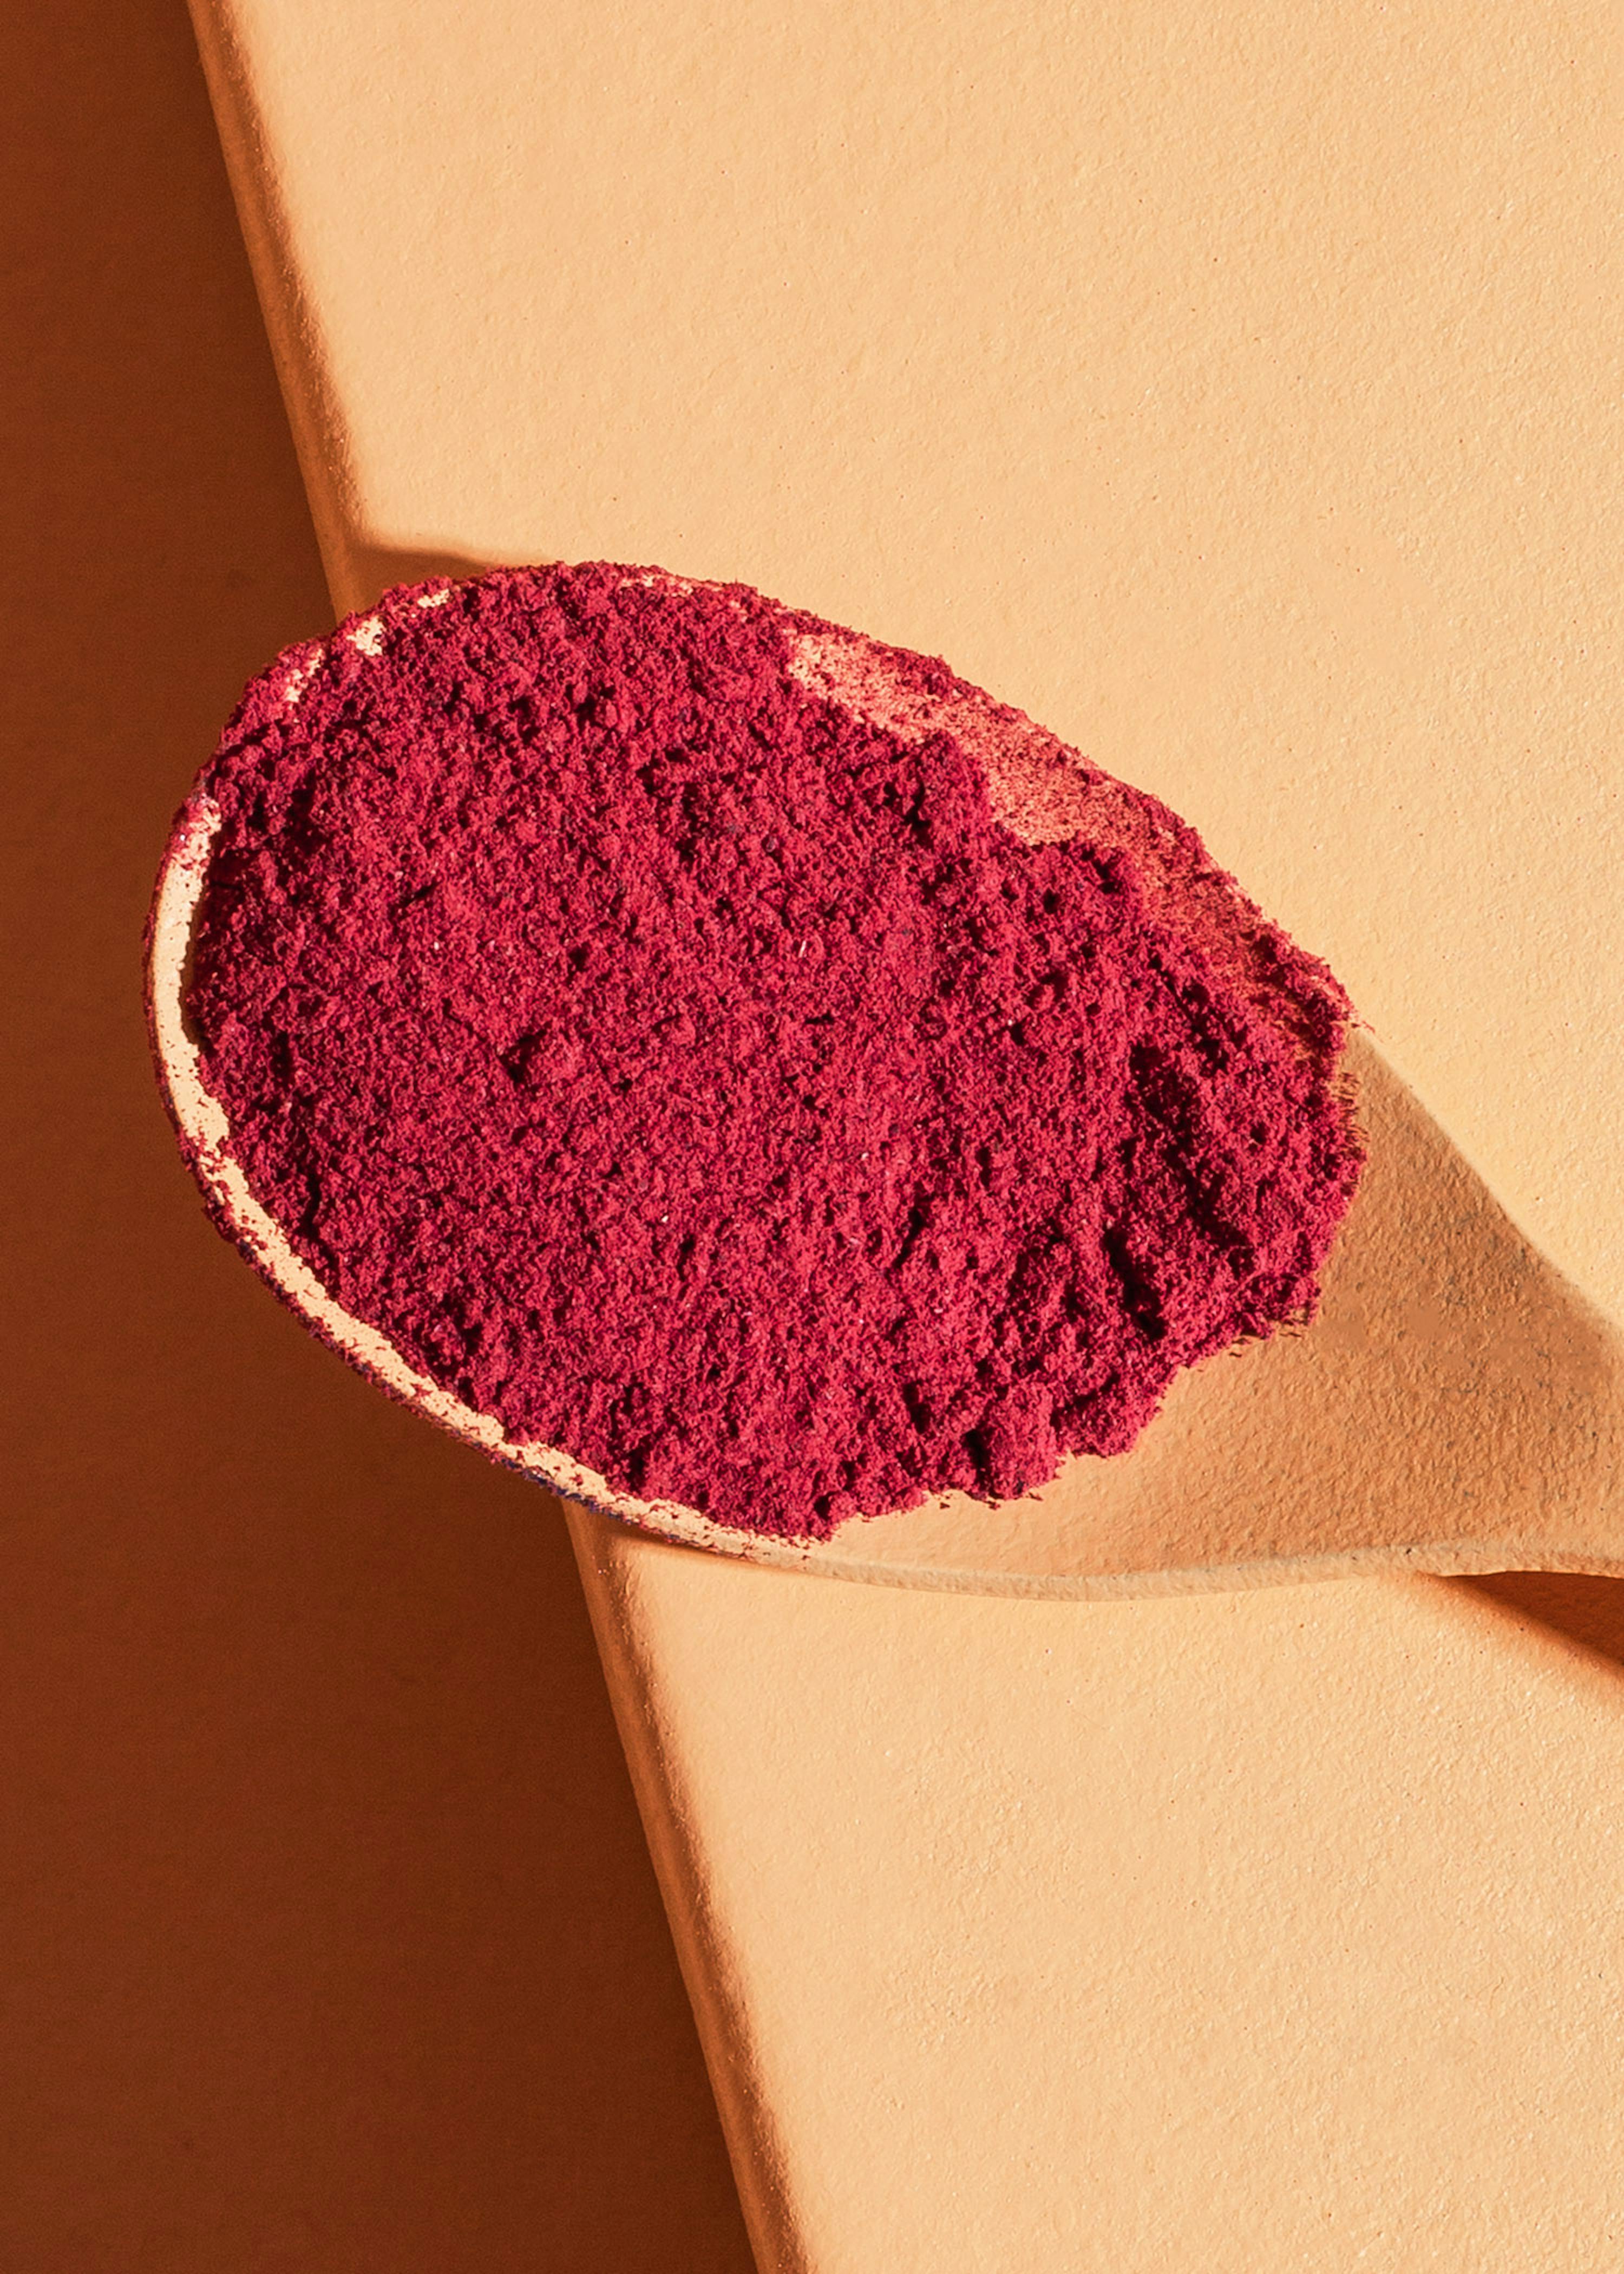 Barbabietola rossa in polvere bio | 500 g